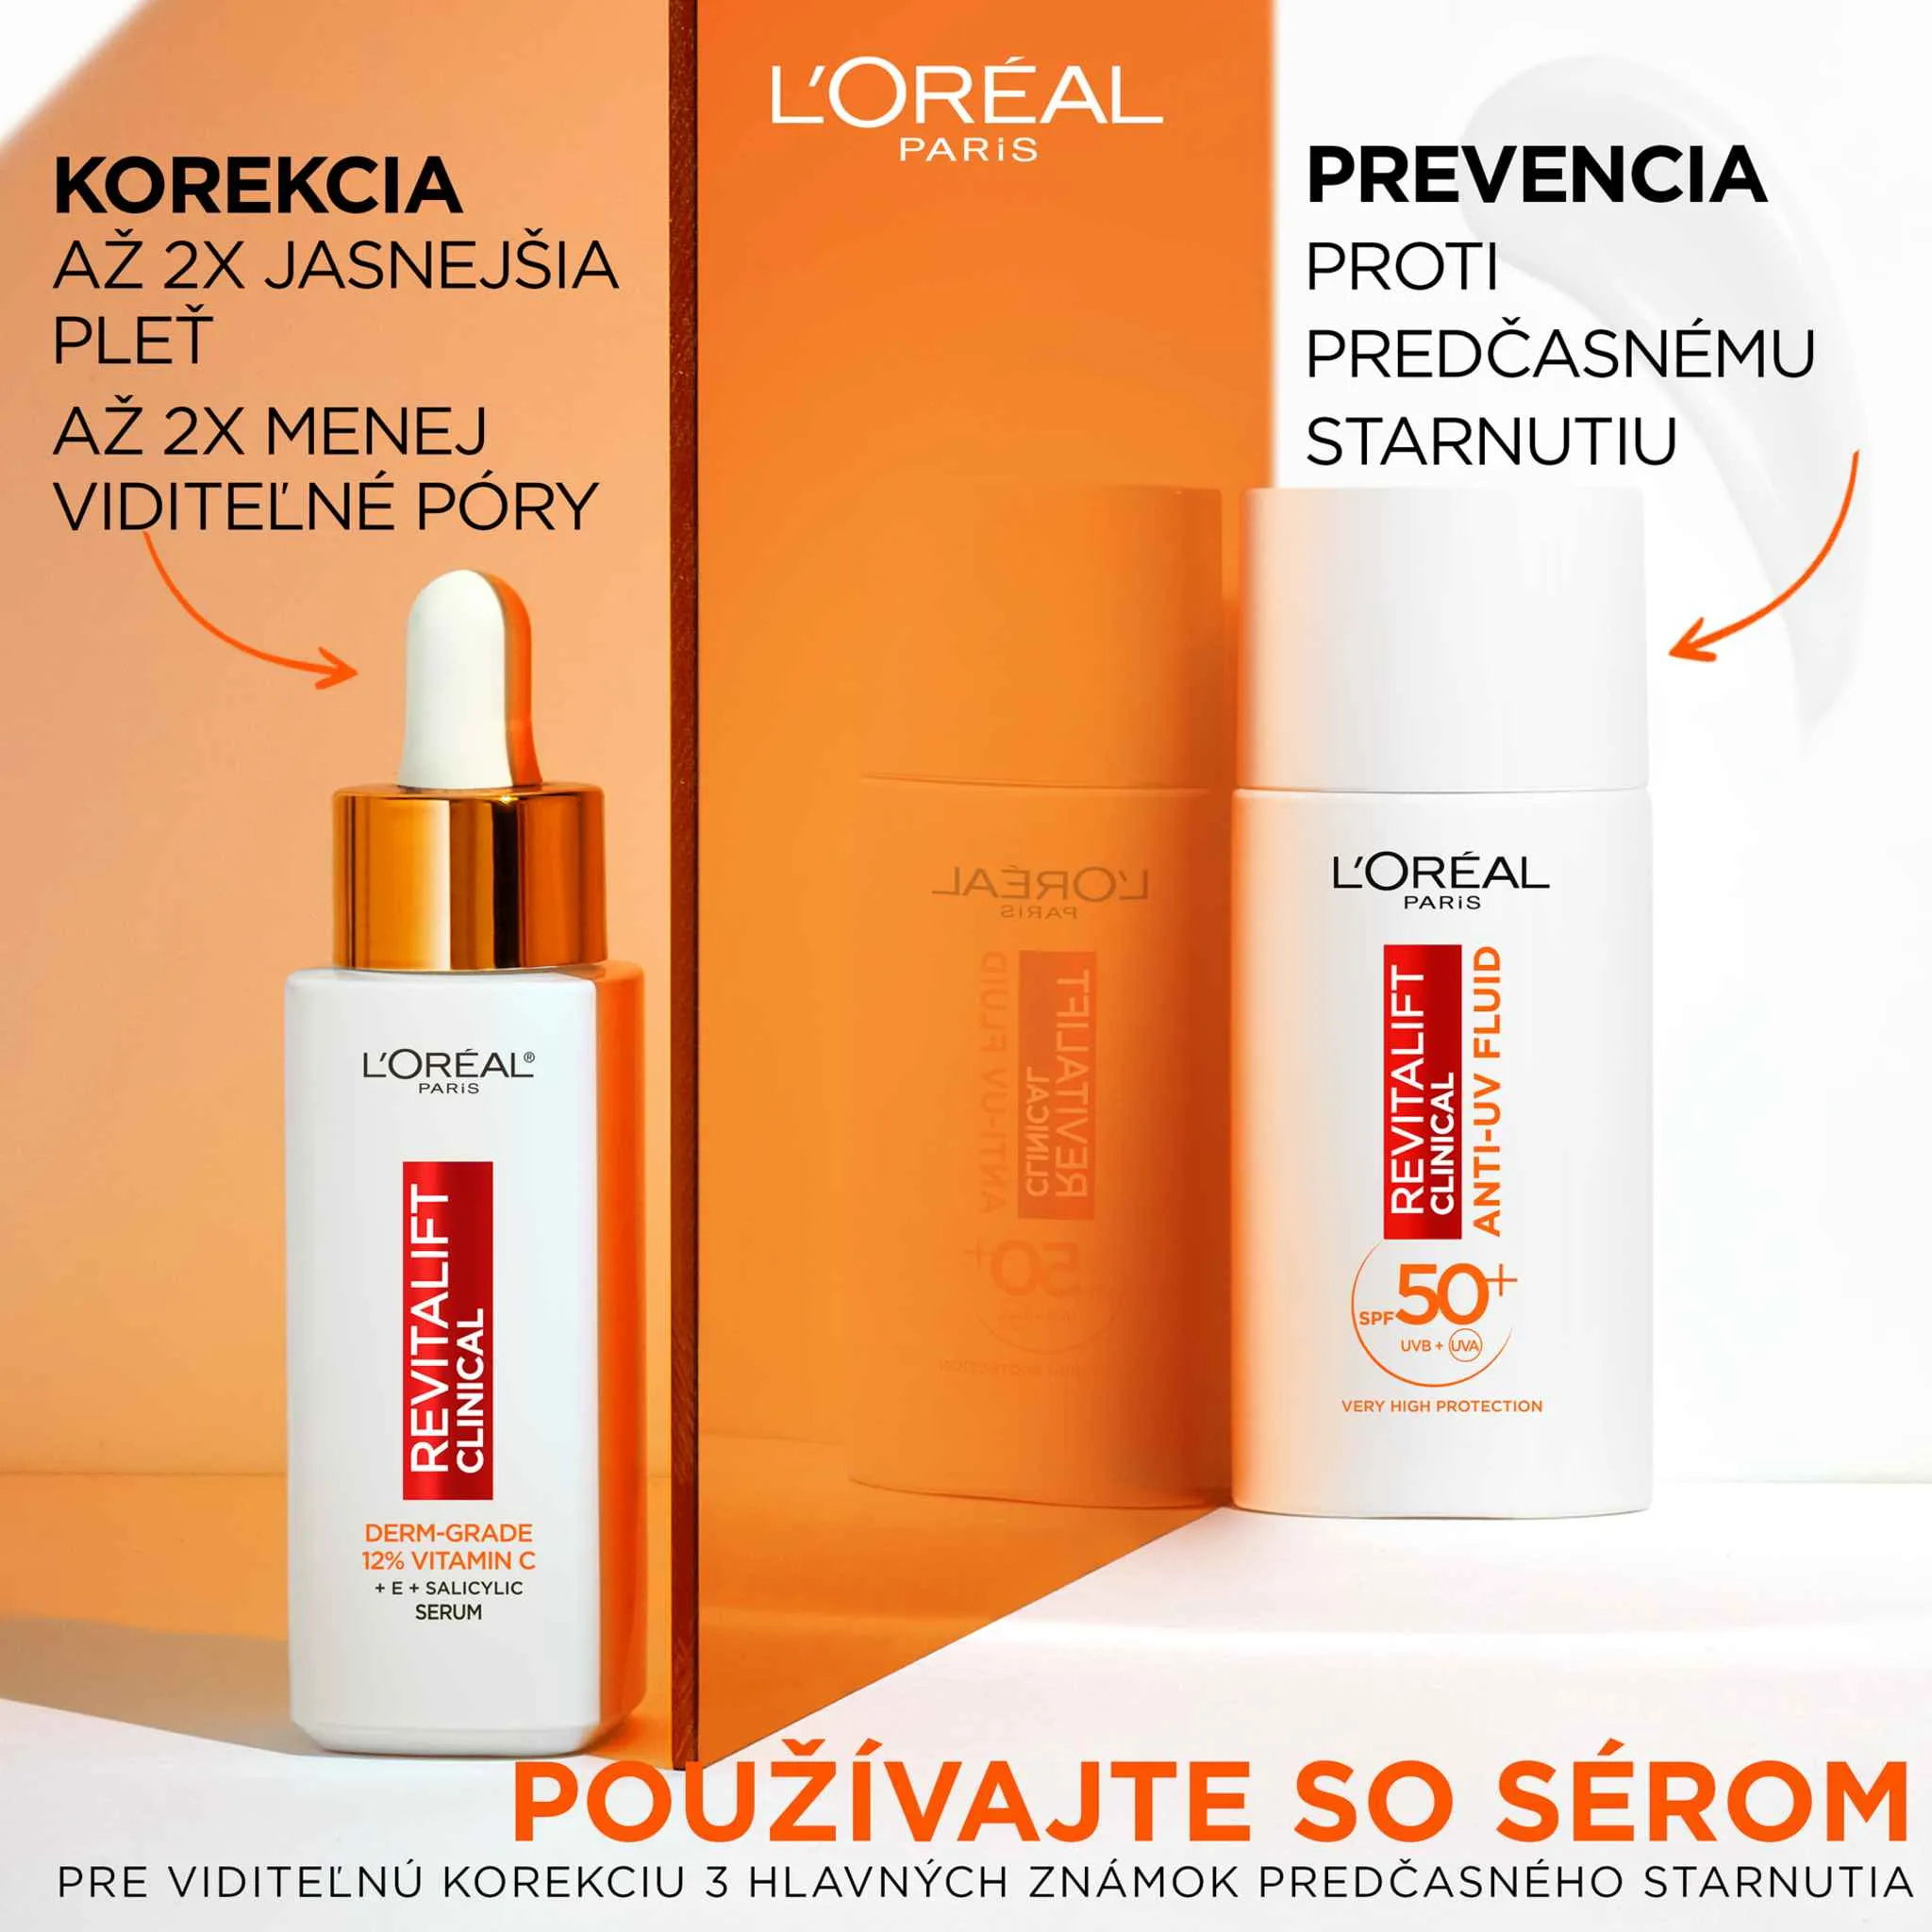 L'Oréal Paris Revitalift Clinical denný anti-UV fluid s veľmi vysokou ochranou s SPF50+ a vitamínom C, 50 ml 1×50 ml, anti-UV fluid